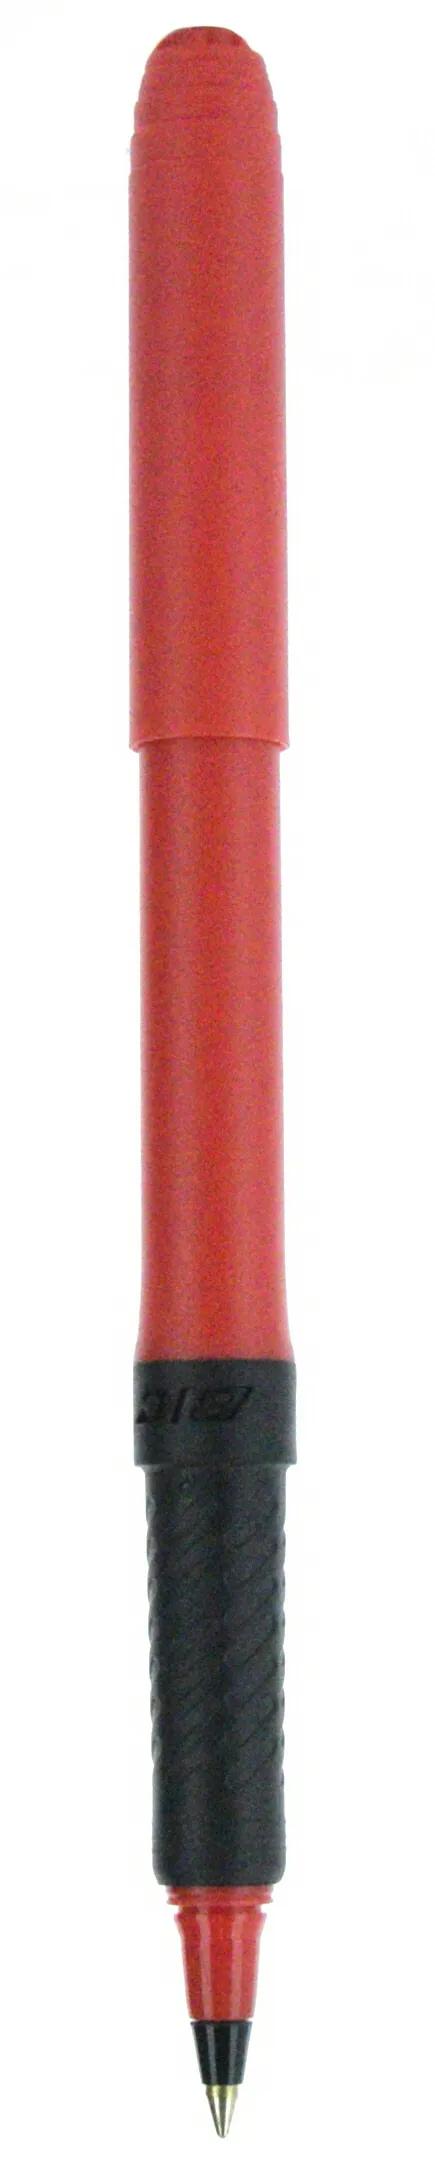 BIC® Grip Roller Pen 145 of 147